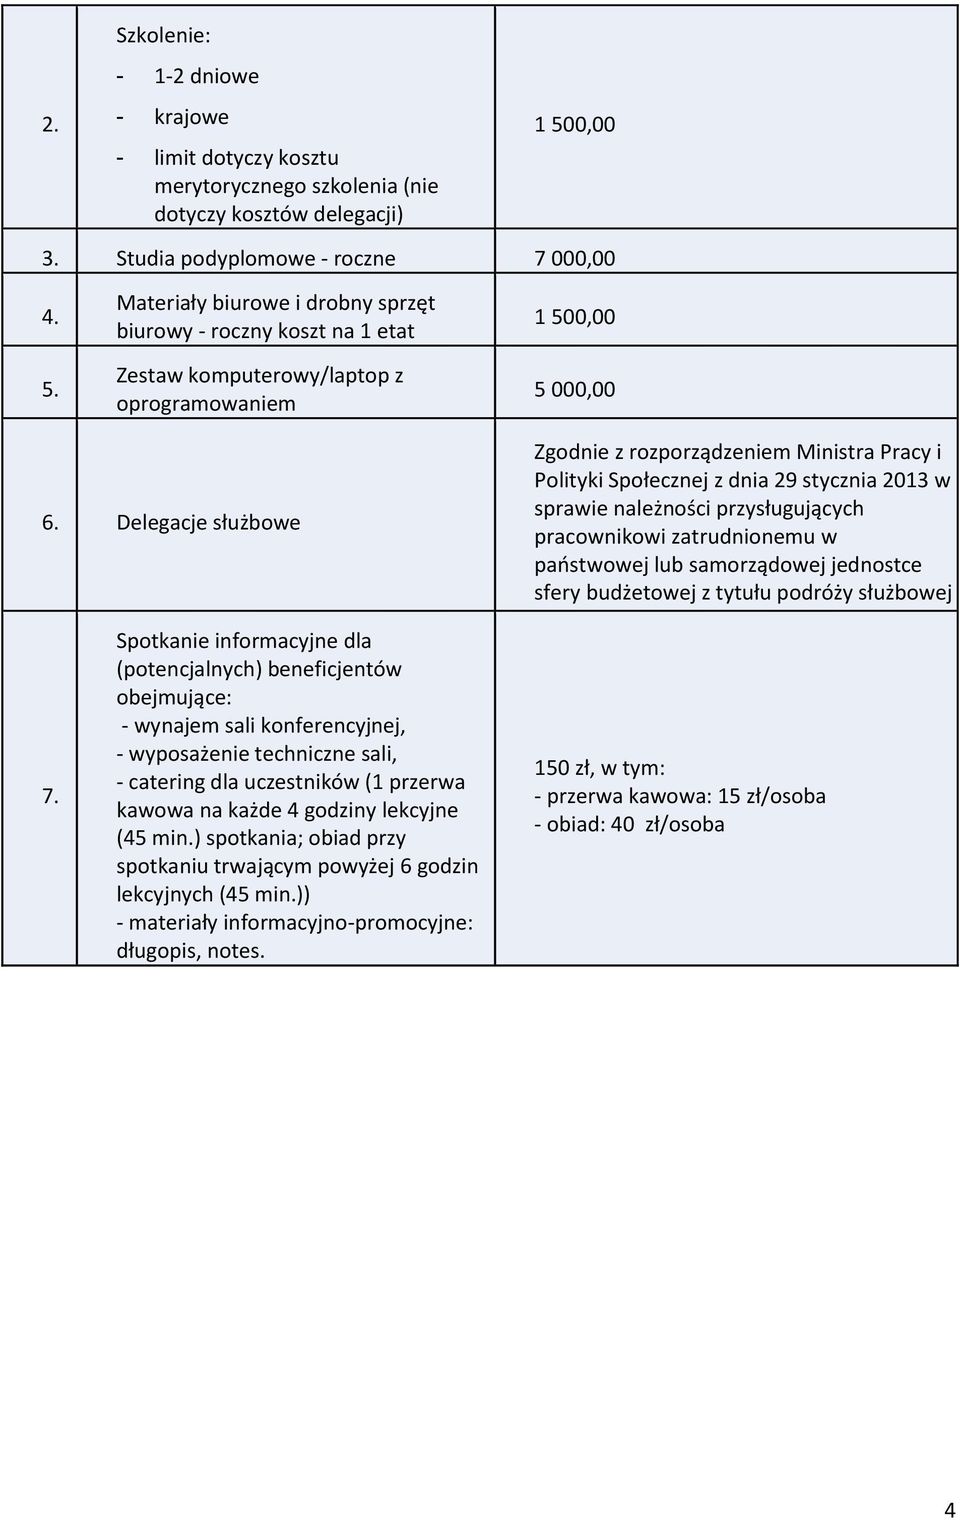 Delegacje służbowe Zgodnie z rozporządzeniem Ministra Pracy i Polityki Społecznej z dnia 29 stycznia 2013 w sprawie należności przysługujących pracownikowi zatrudnionemu w państwowej lub samorządowej